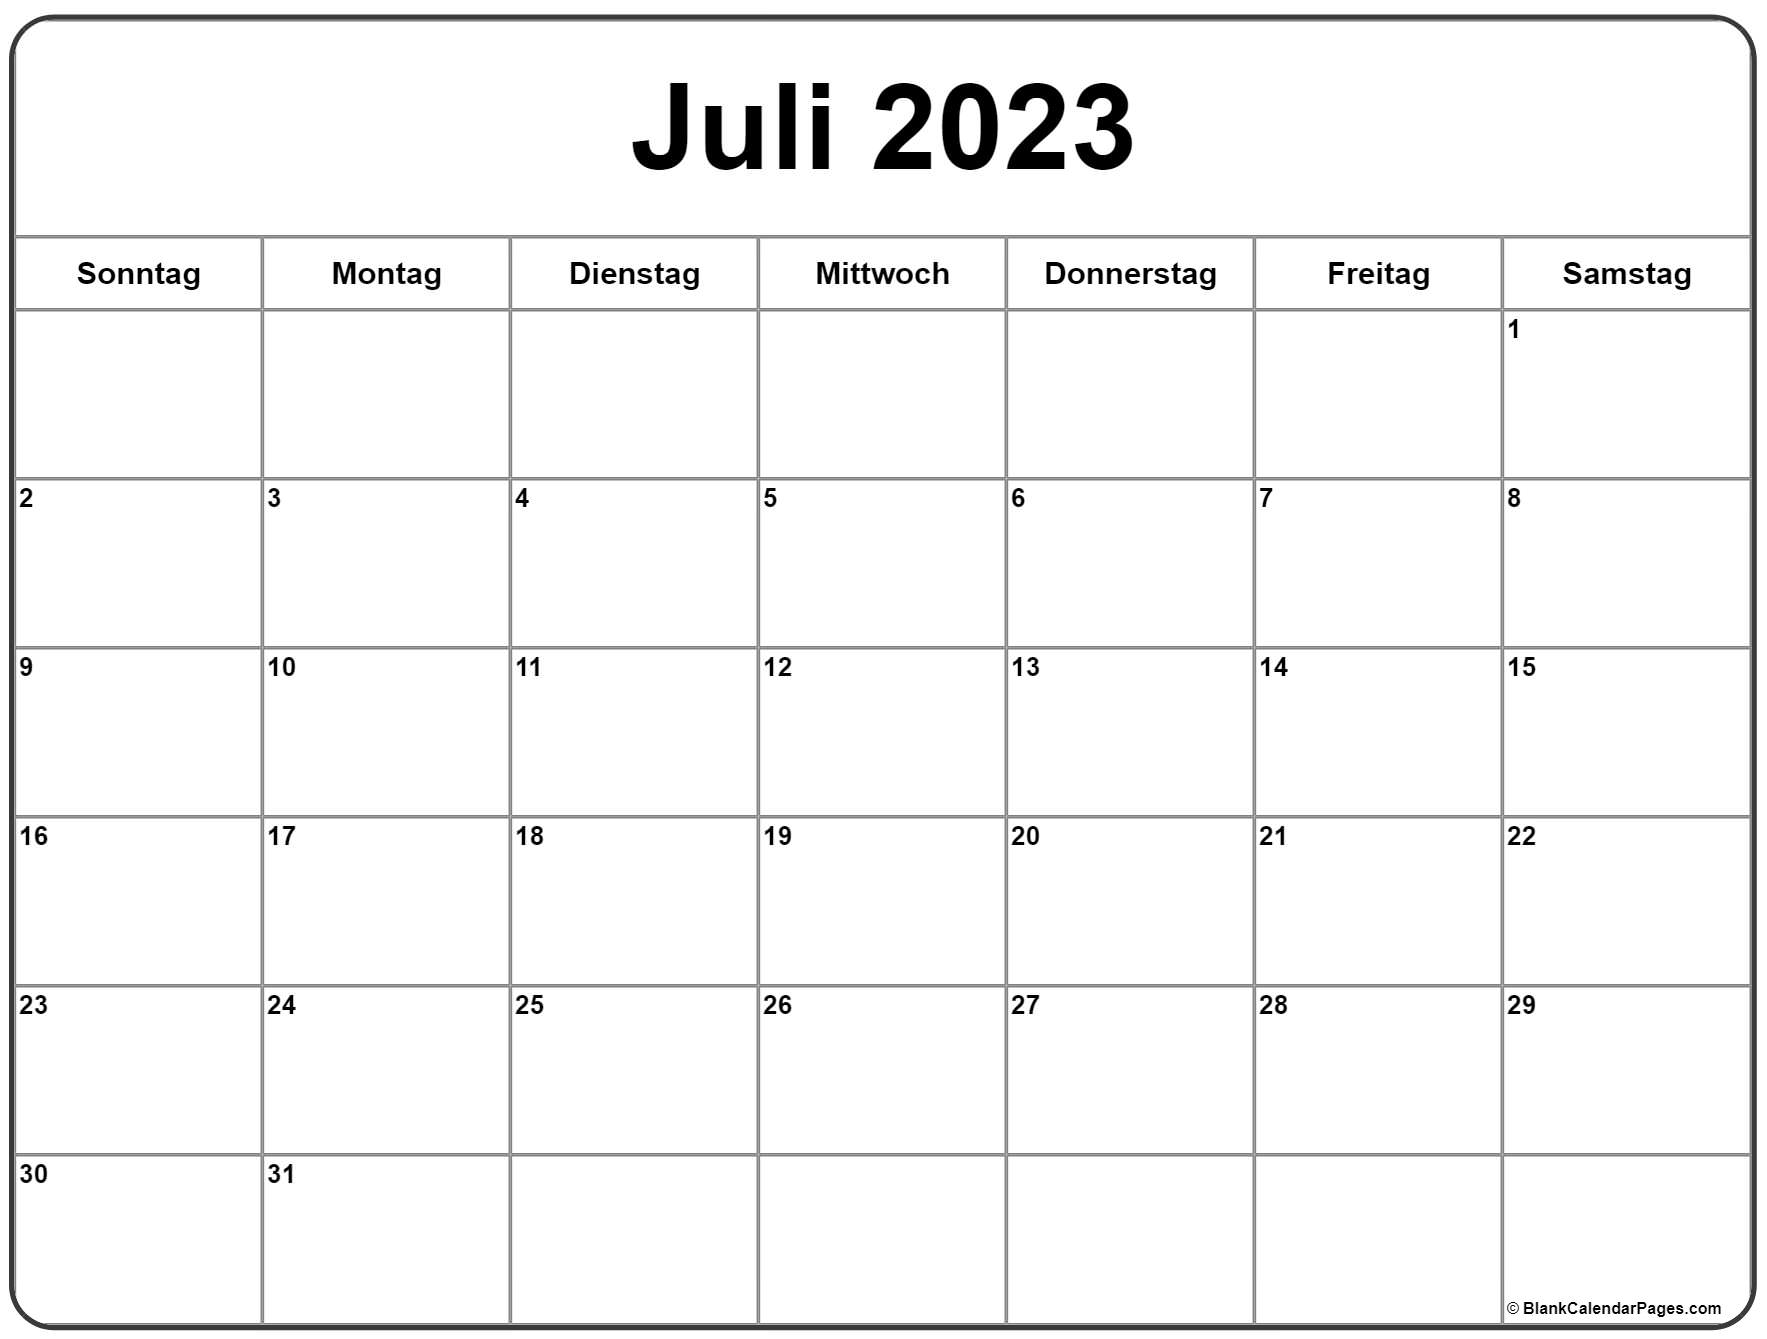 Juli 2023 kalender auf Deutsch kalender 2023